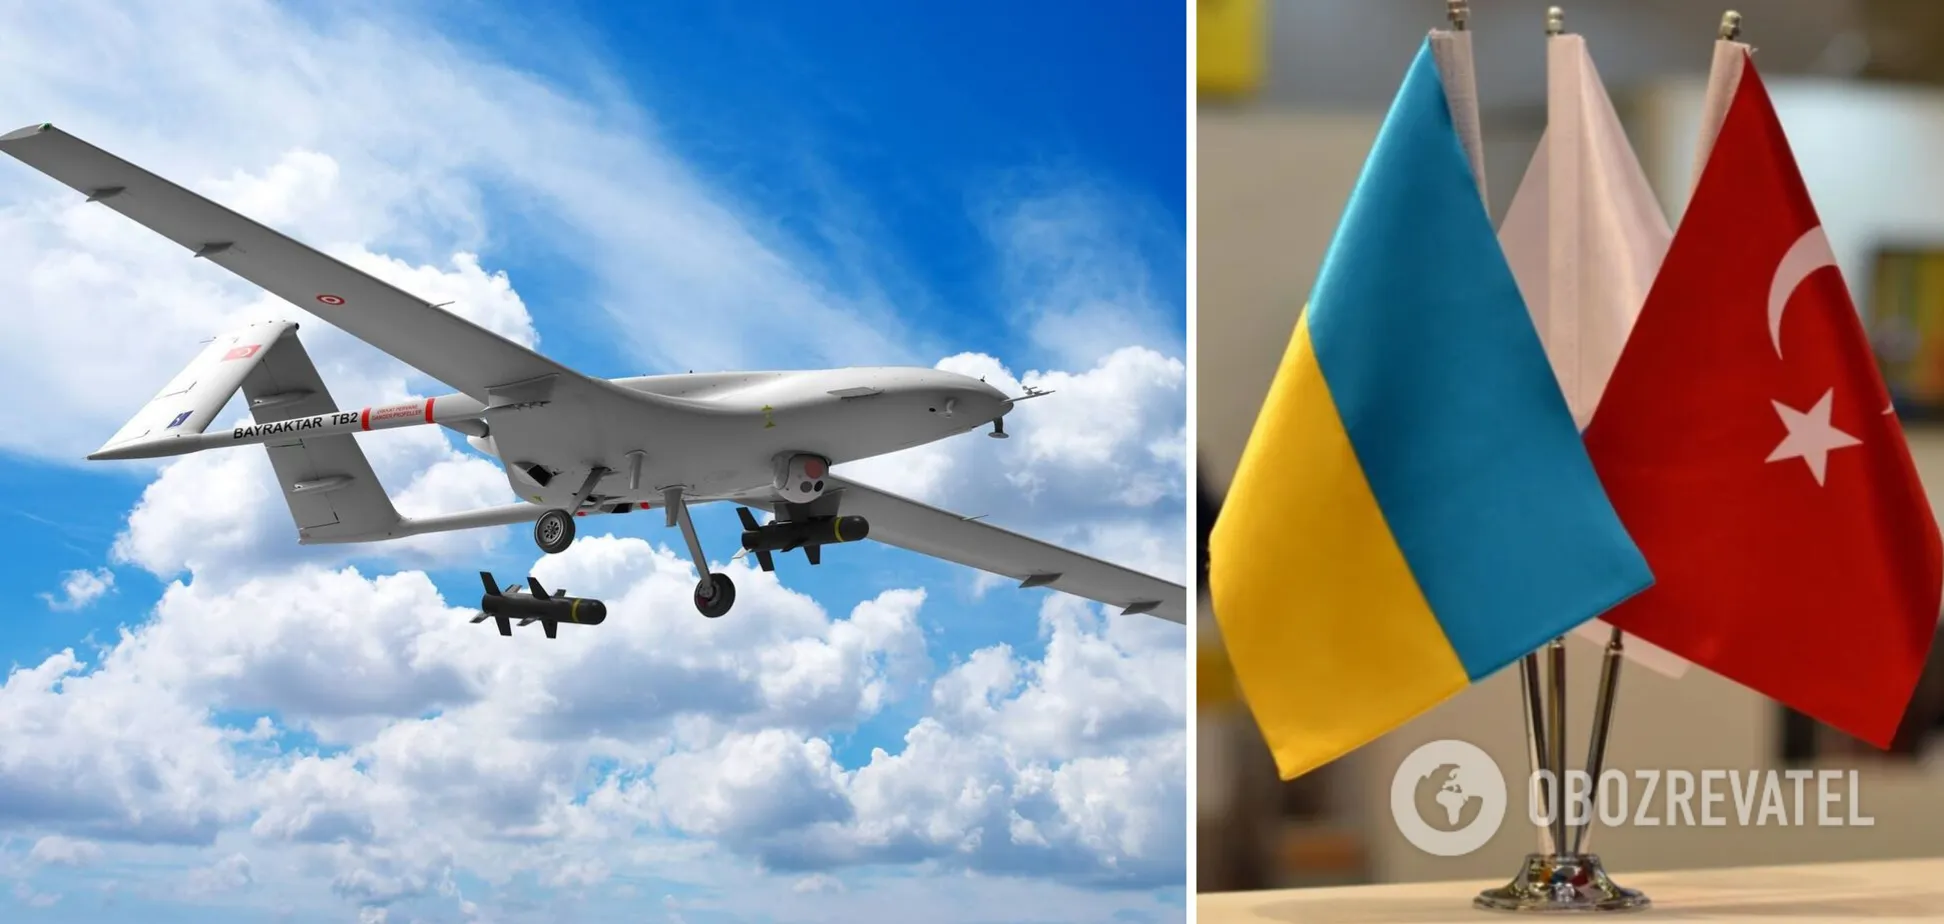 Компанія BAYKAR передасть Україні три безпілотники безкоштовно